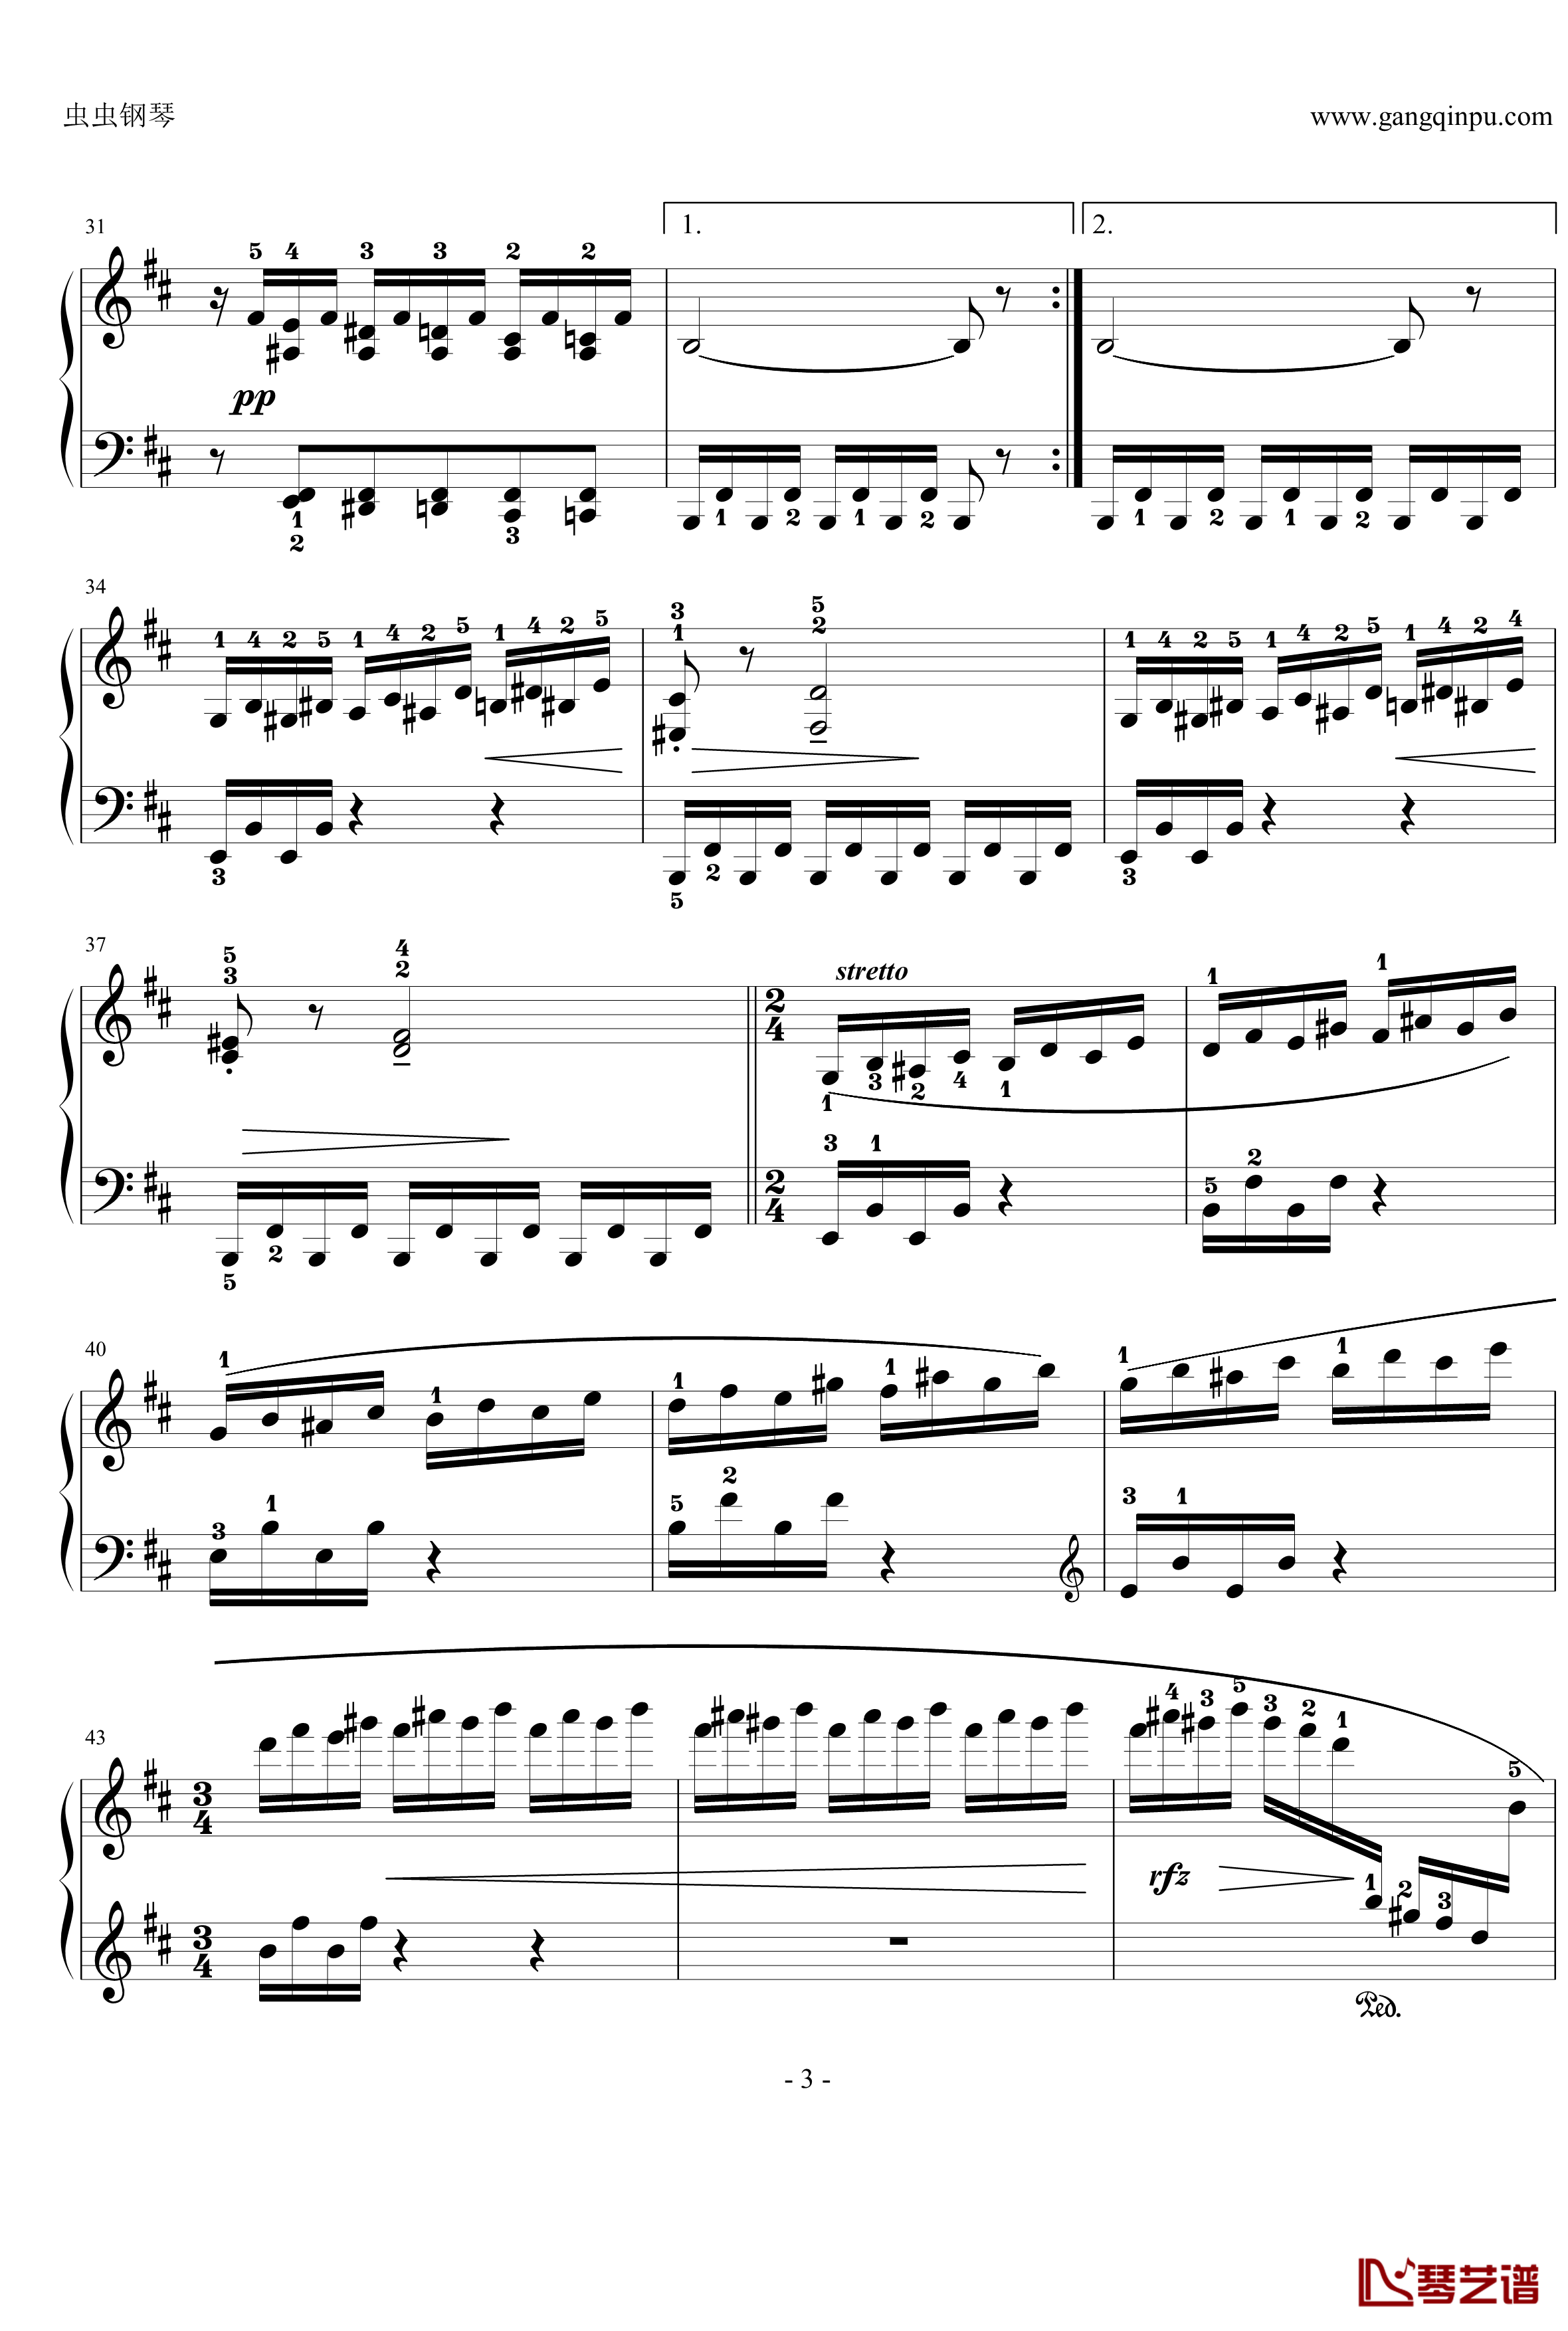 小溪钢琴谱-nyride-格里格3